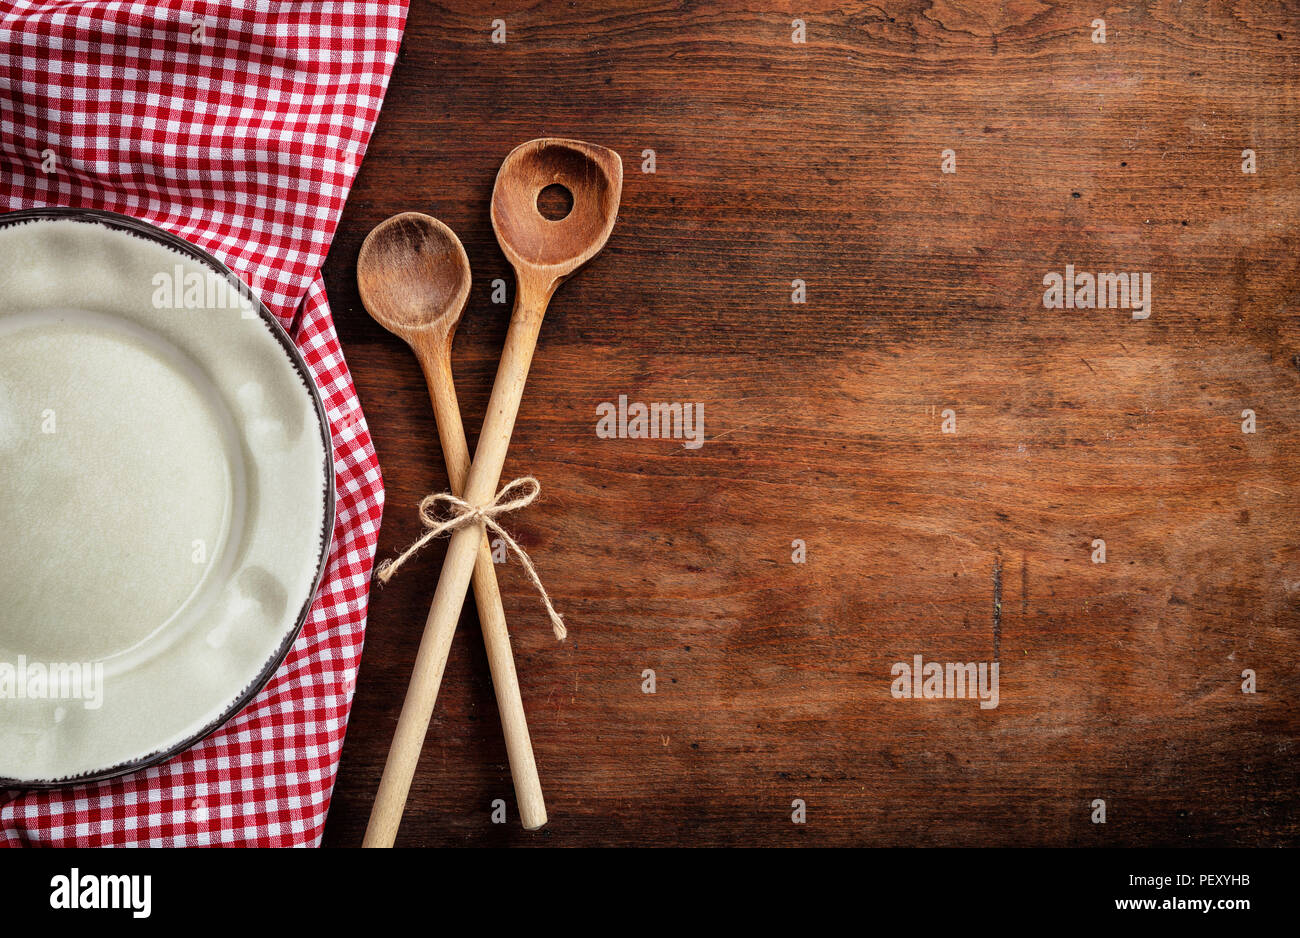 Lieu rustique. La plaque vide, des ustensiles de cuisine et nappe rouge sur la table en bois, vue du dessus, copy space Banque D'Images